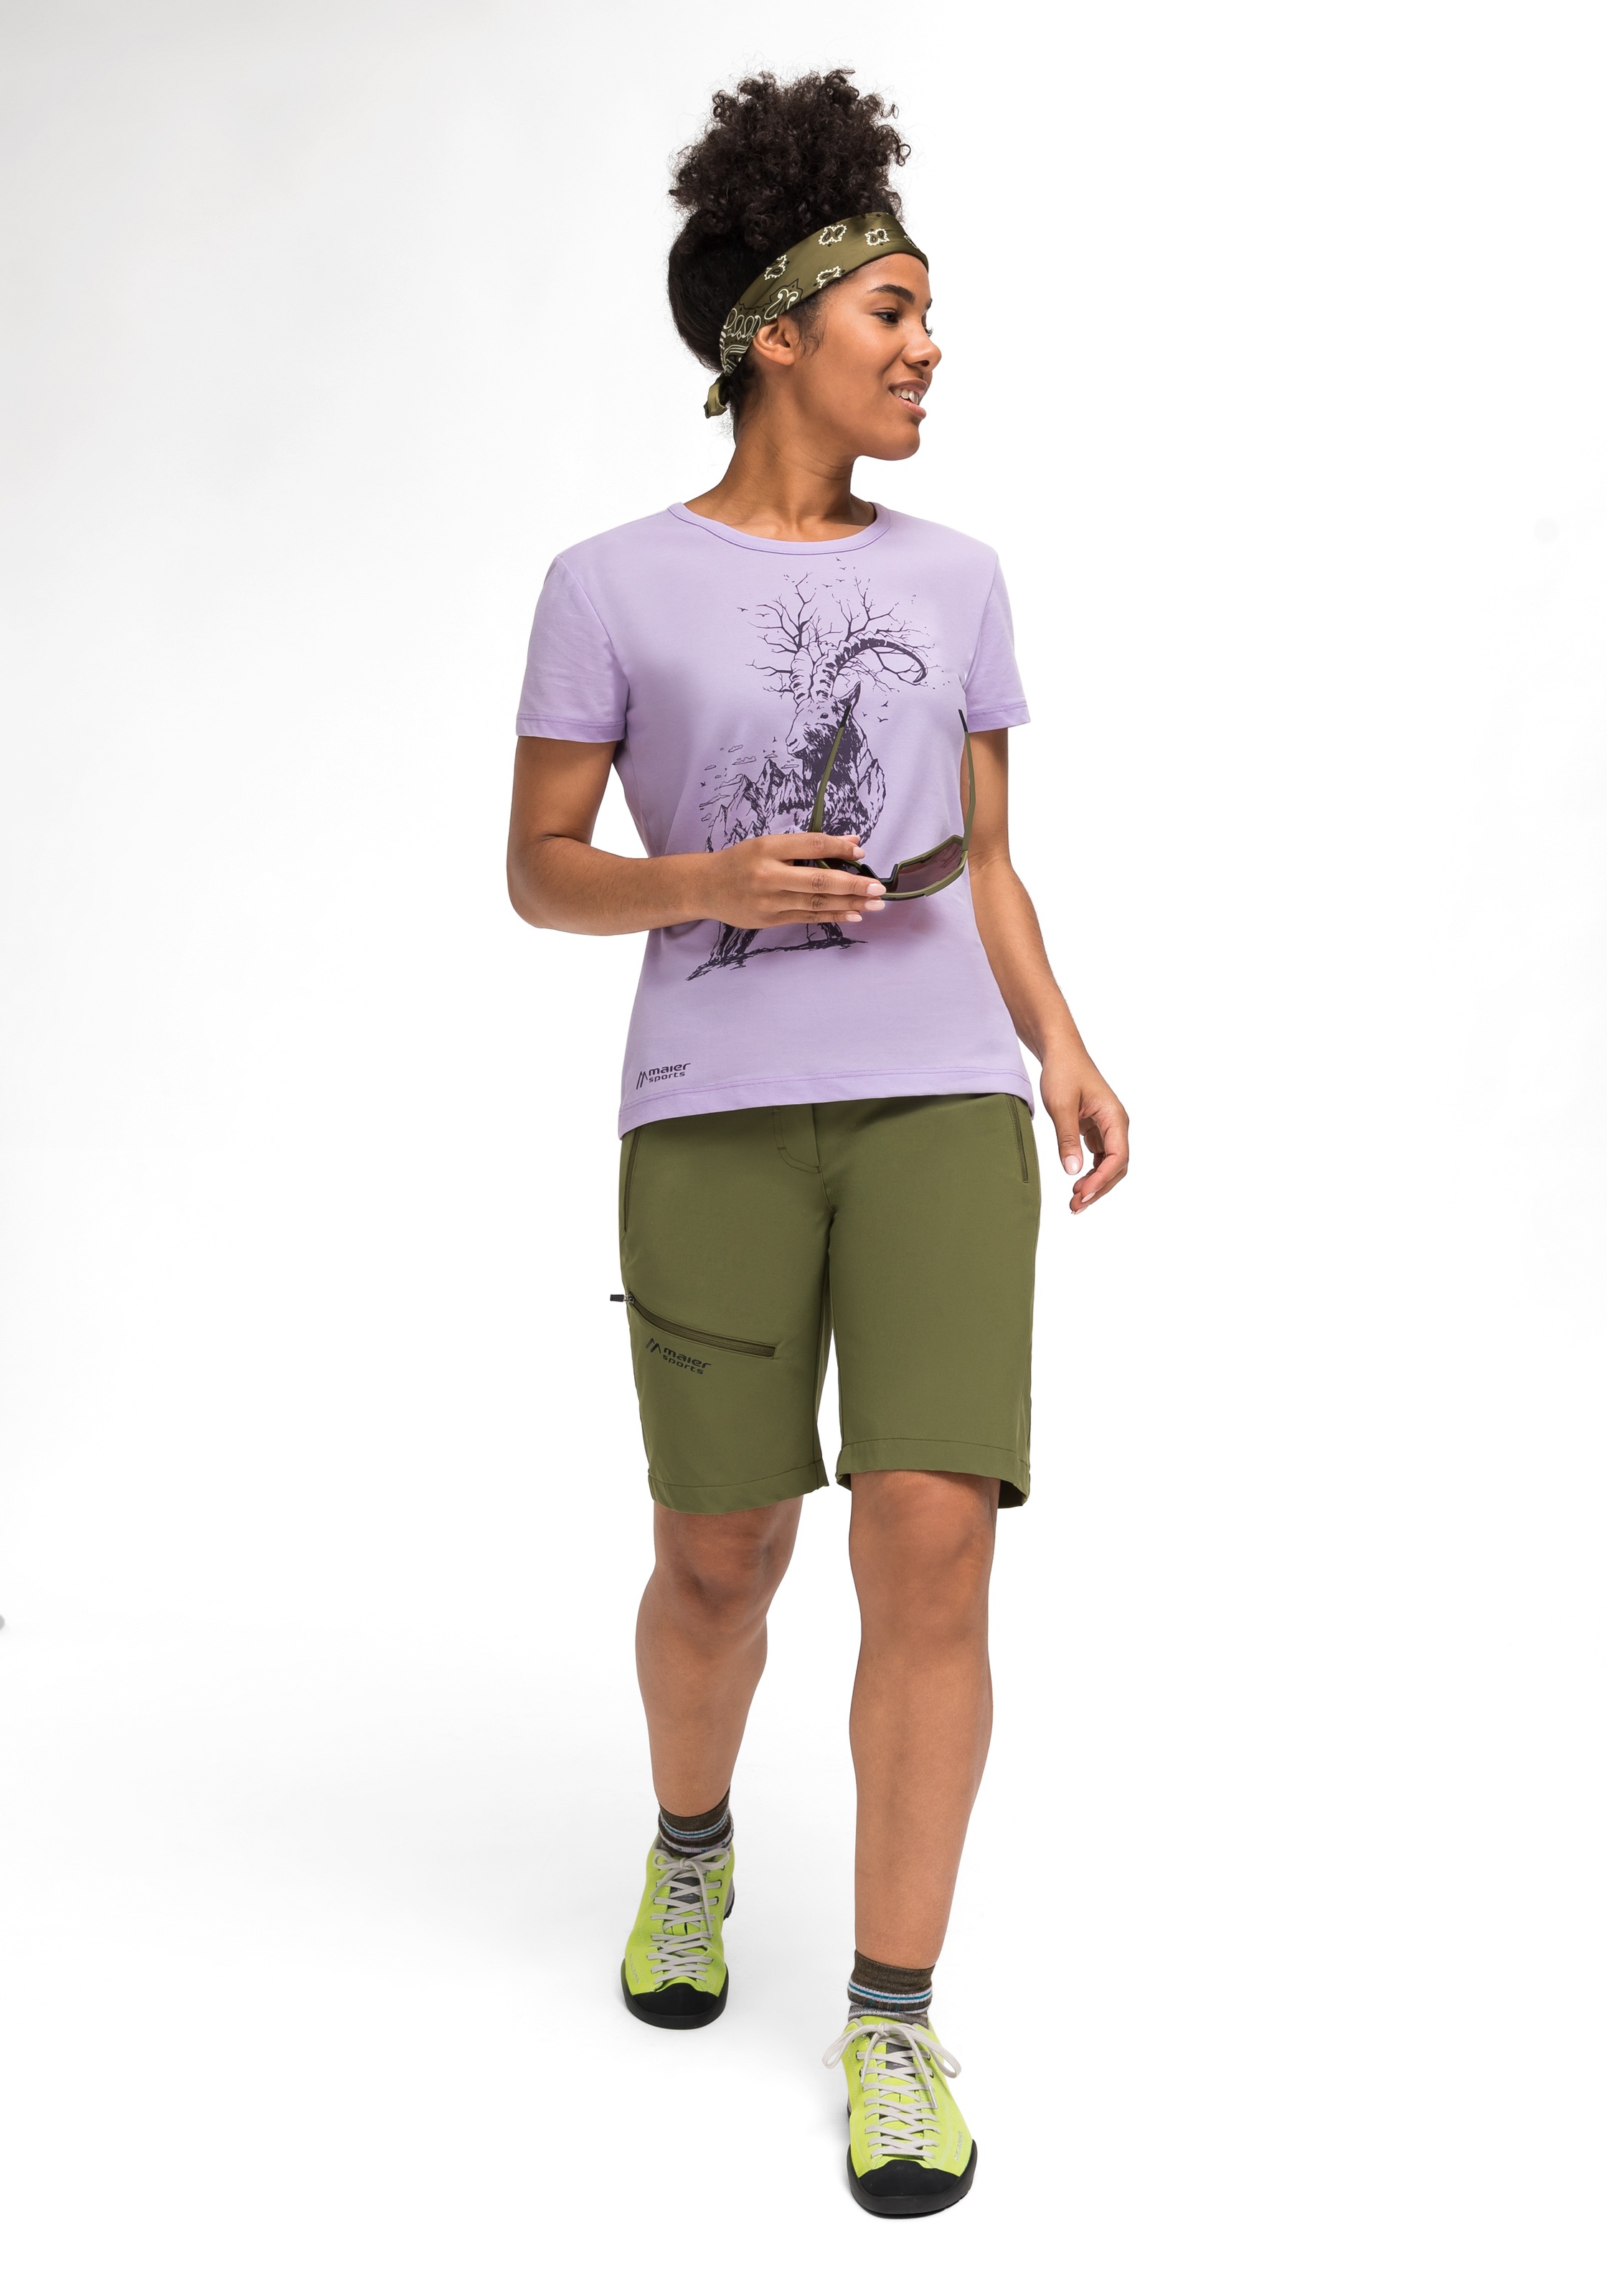 Wandern walking 26 W«, »Burgeis Maier Sports T-Shirt Print und Freizeit Kurzarmshirt für Damen mit kaufen | I\'m